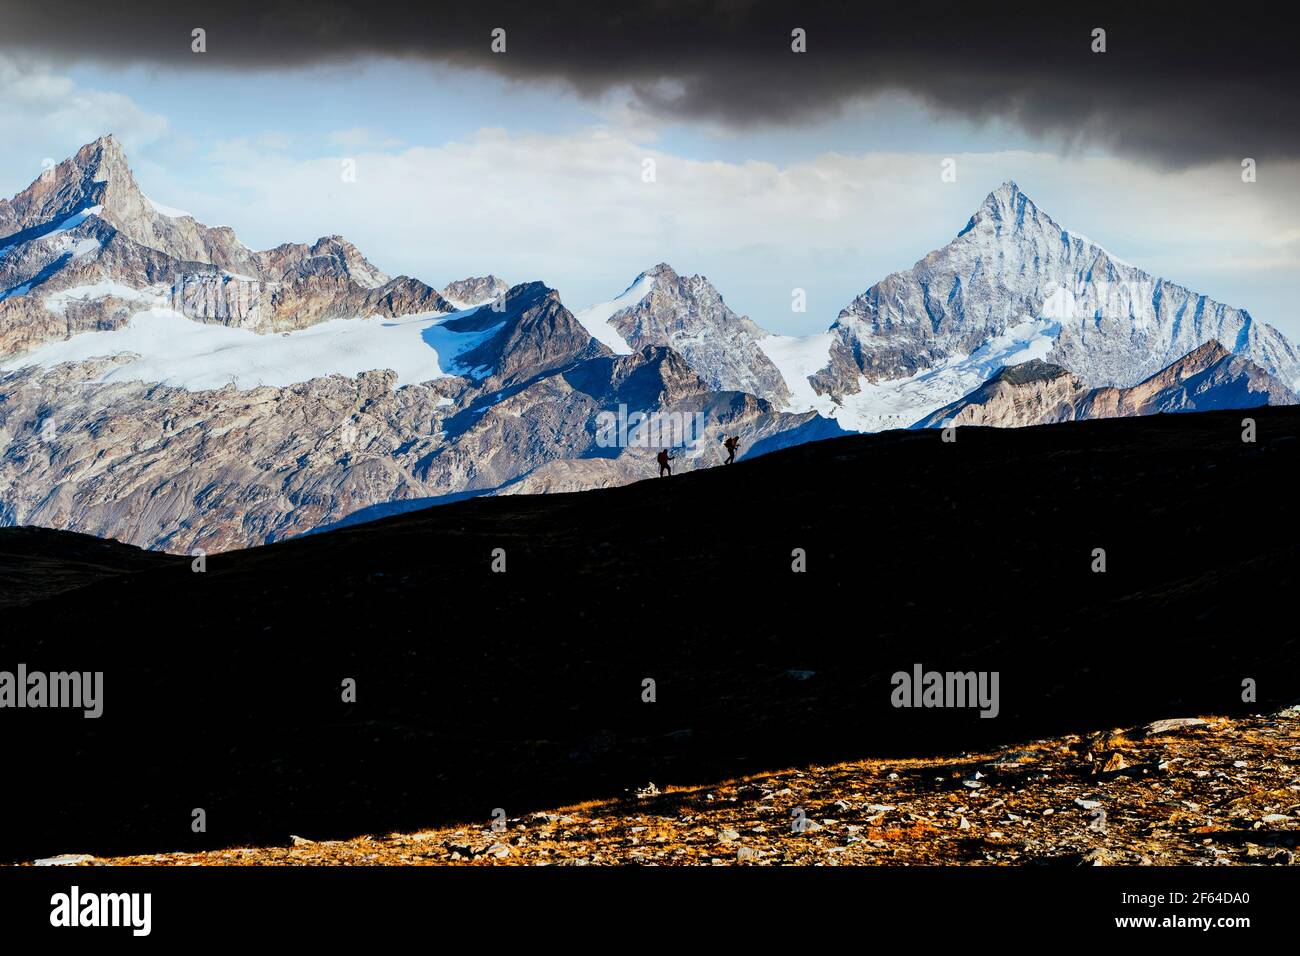 Randonneurs avec sac à dos marchant sur la crête de montagne avec Weisshorn en arrière-plan, canton du Valais, Suisse Banque D'Images